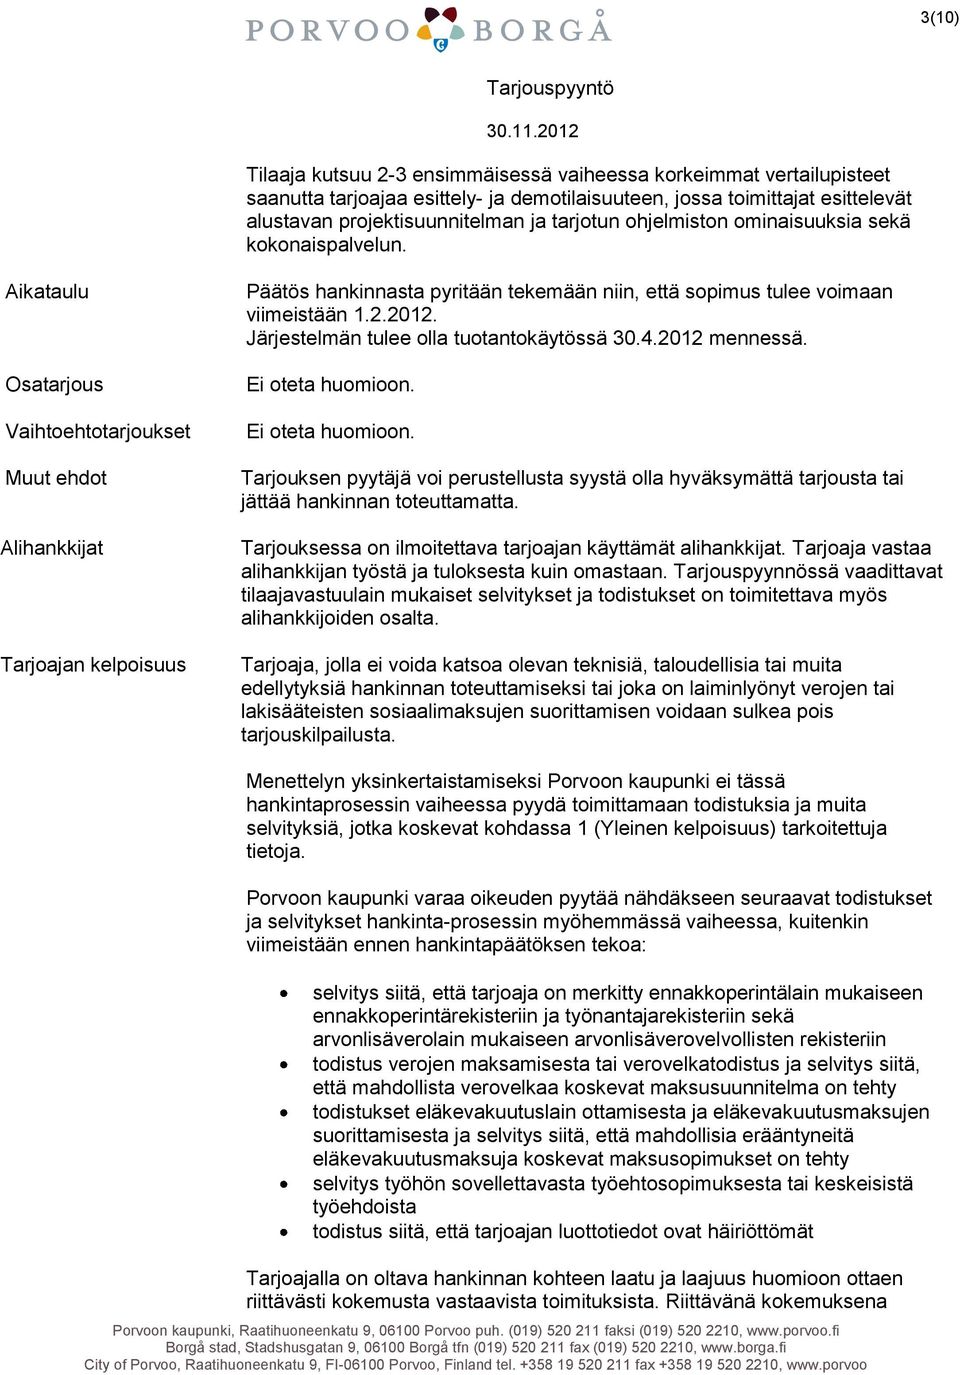 Aikataulu Osatarjous Vaihtoehtotarjoukset Muut ehdot Alihankkijat Tarjoajan kelpoisuus Päätös hankinnasta pyritään tekemään niin, että sopimus tulee voimaan viimeistään 1.2.2012.